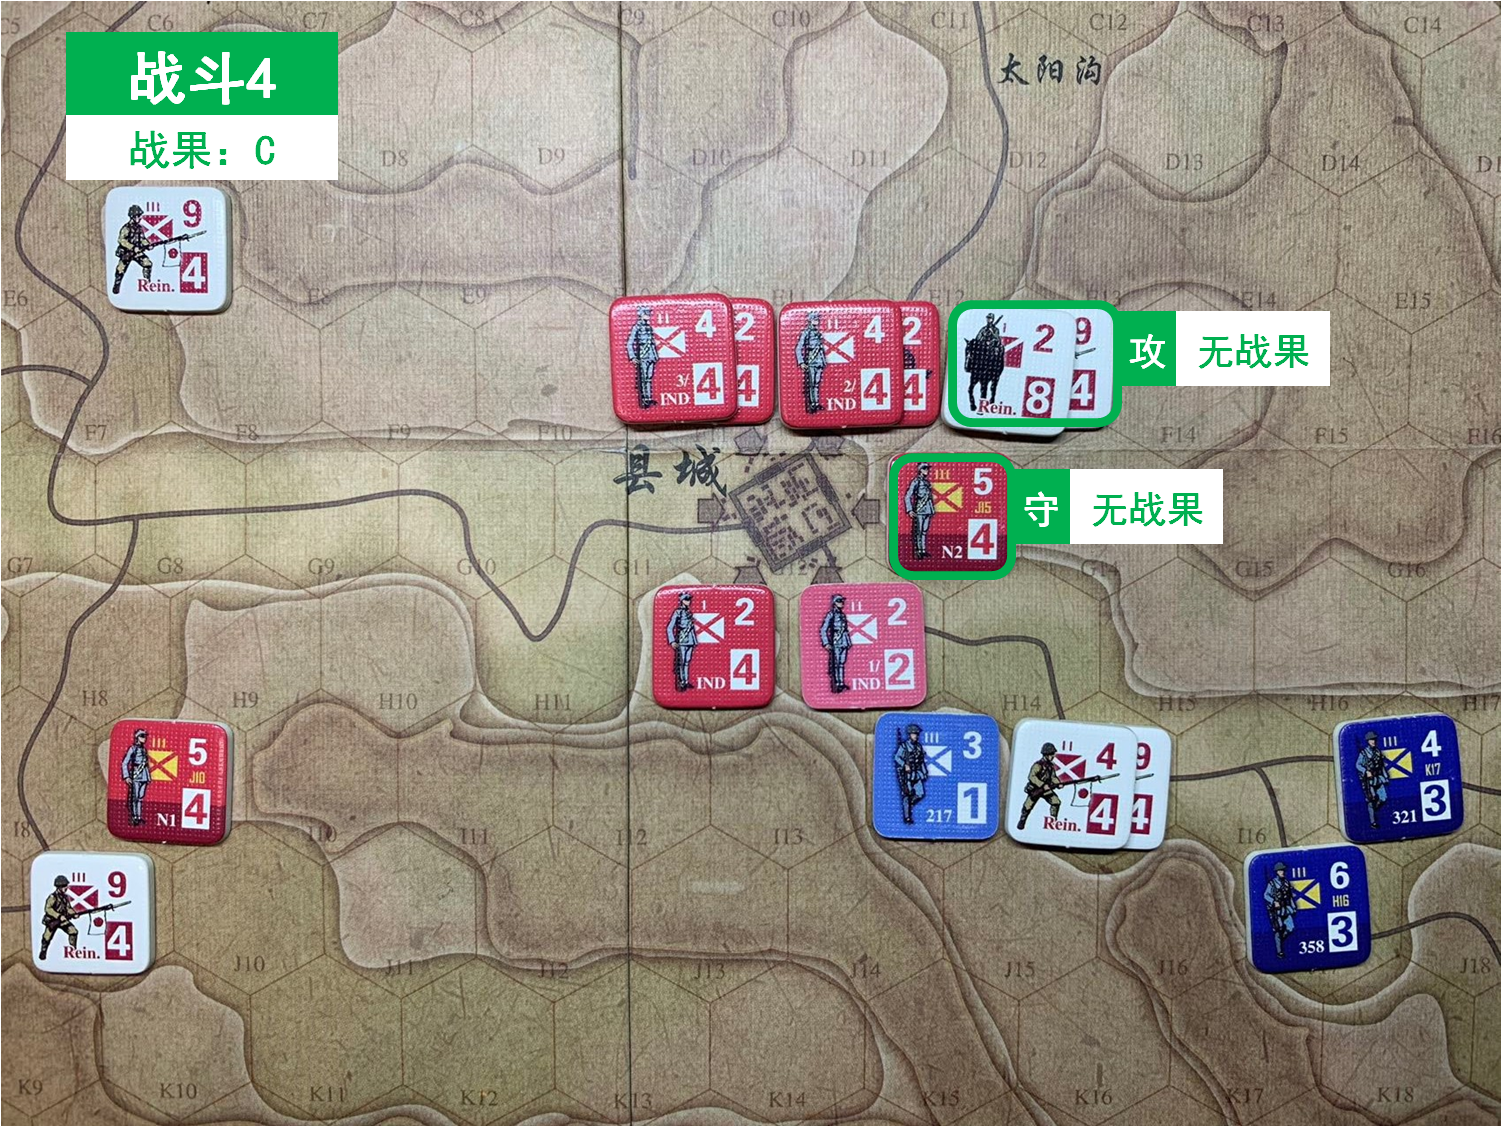 第五回合 日方戰鬥階段 戰鬥4 戰鬥結果